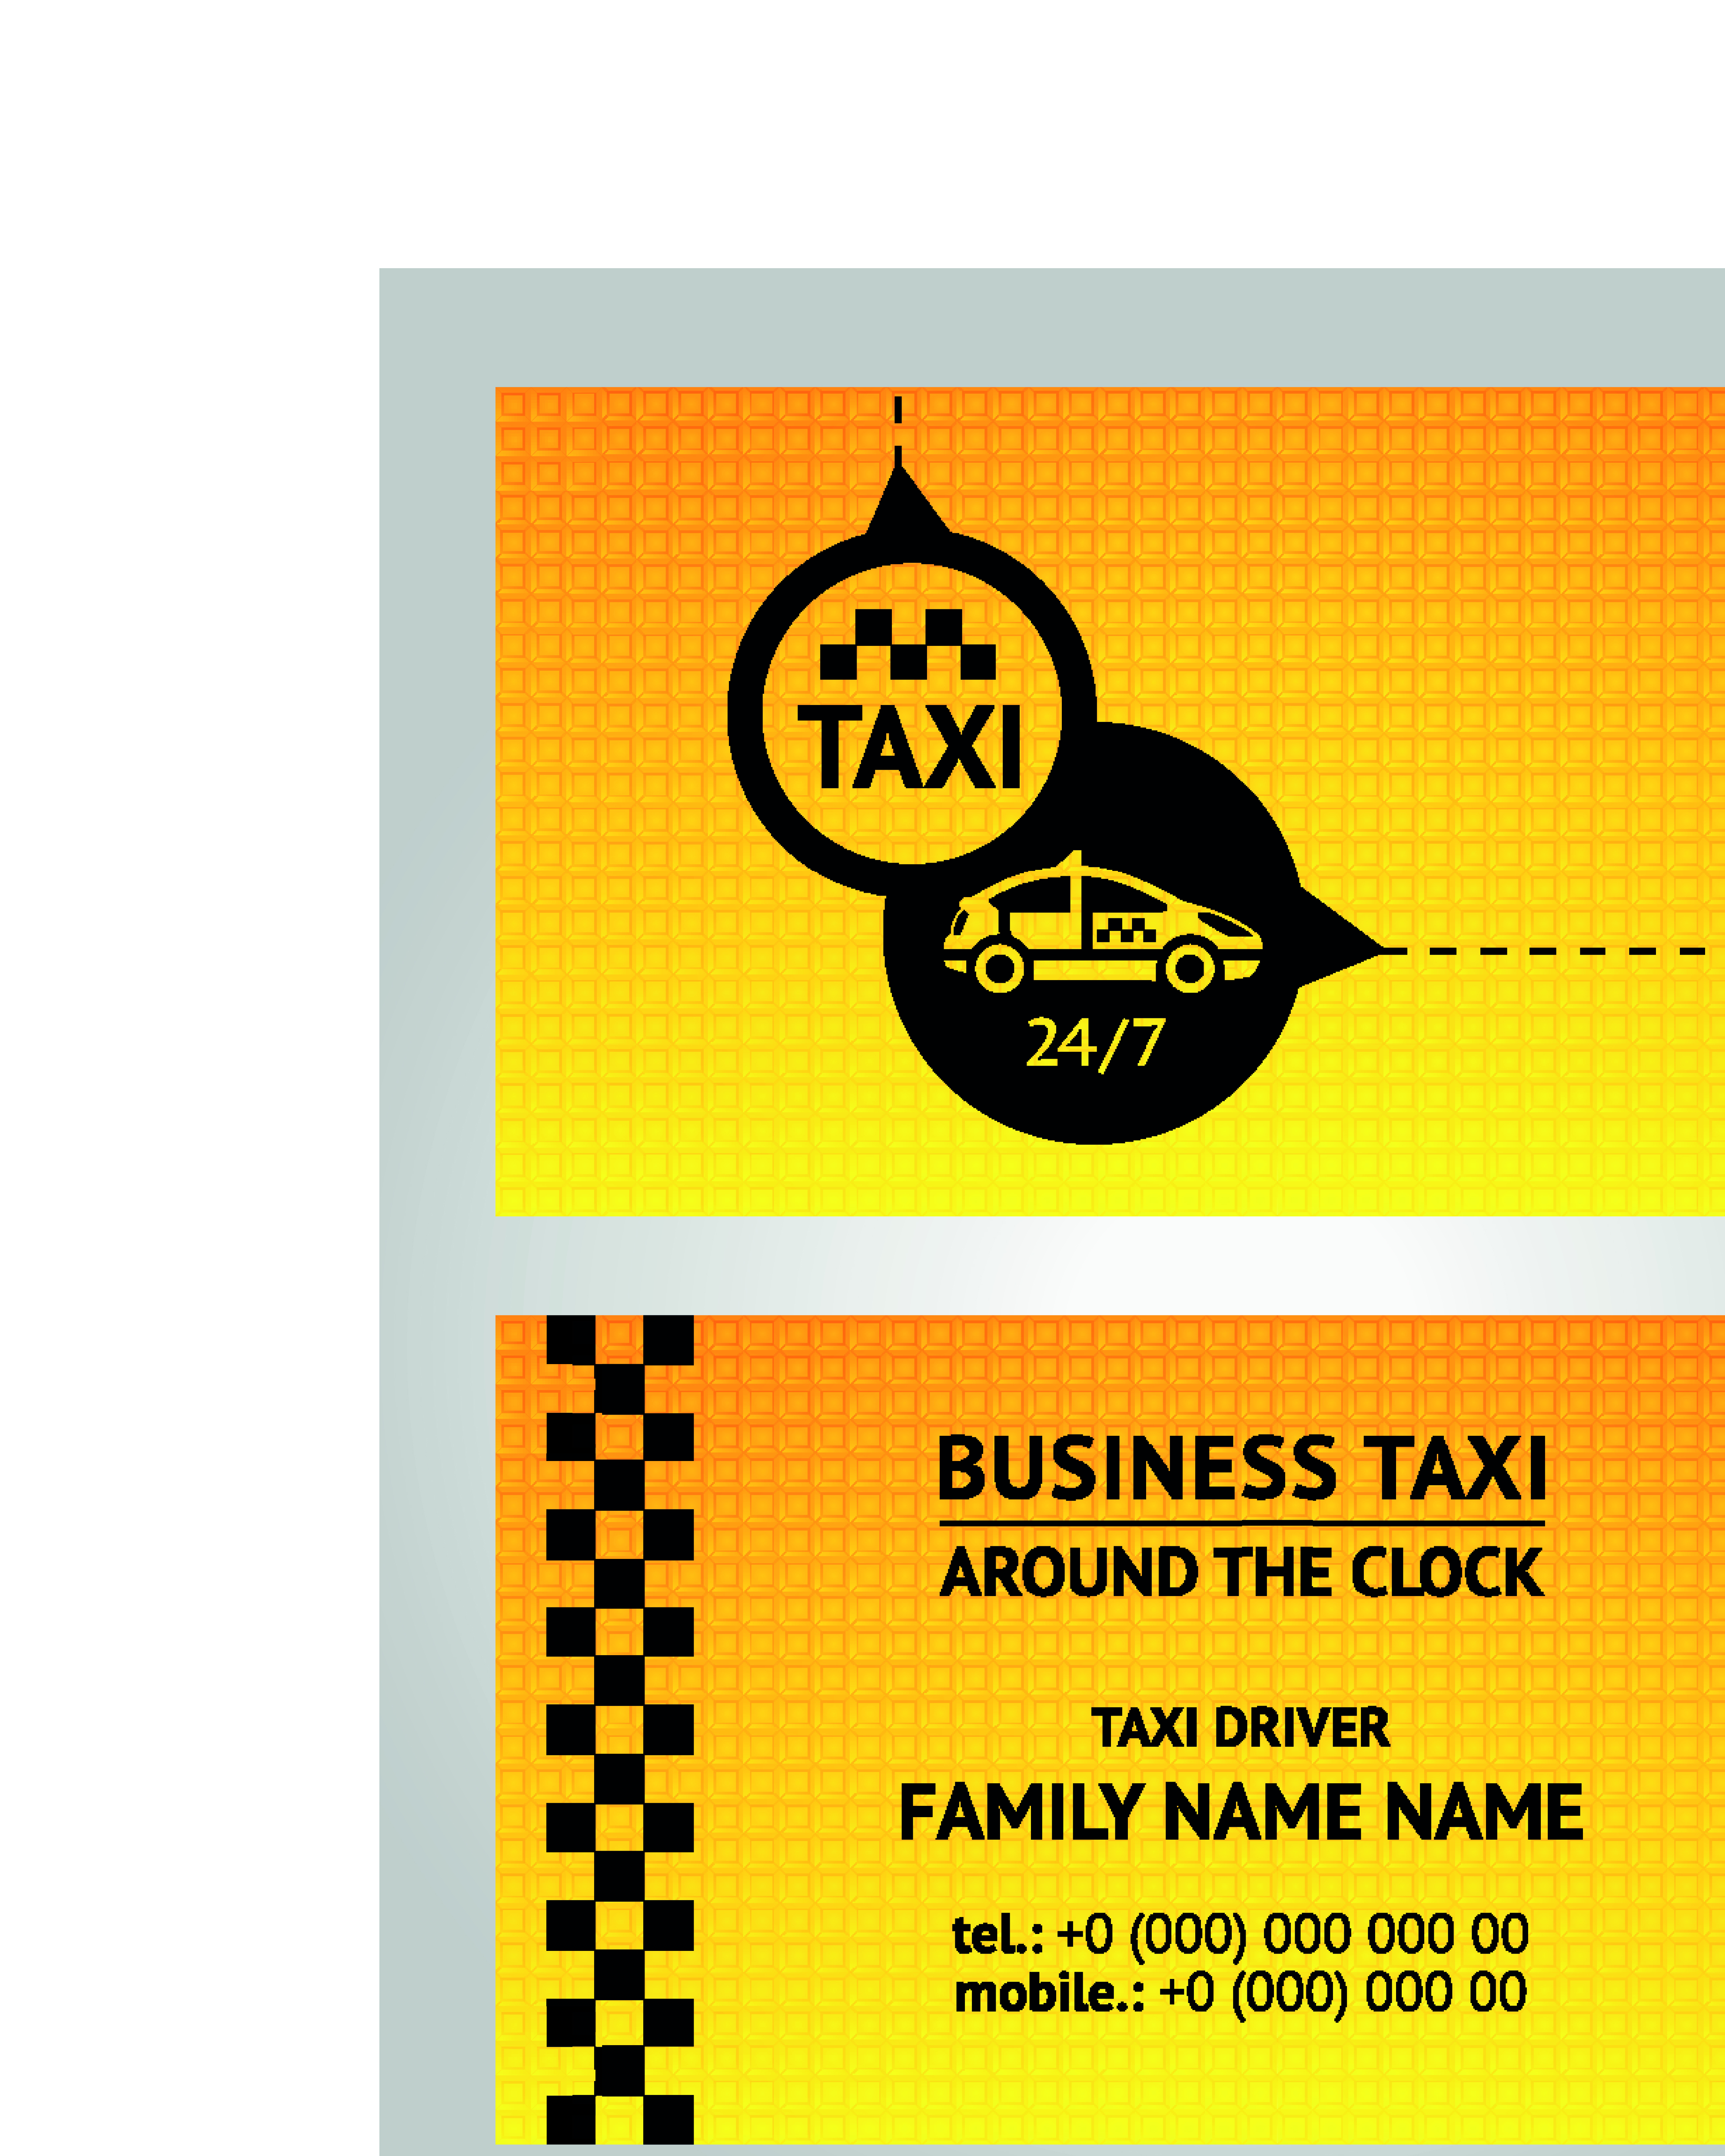 Такси соликамск телефон. Визитка такси. Визитка бизнес такси. Визитка такси шаблон. Визитки такси прикольные.